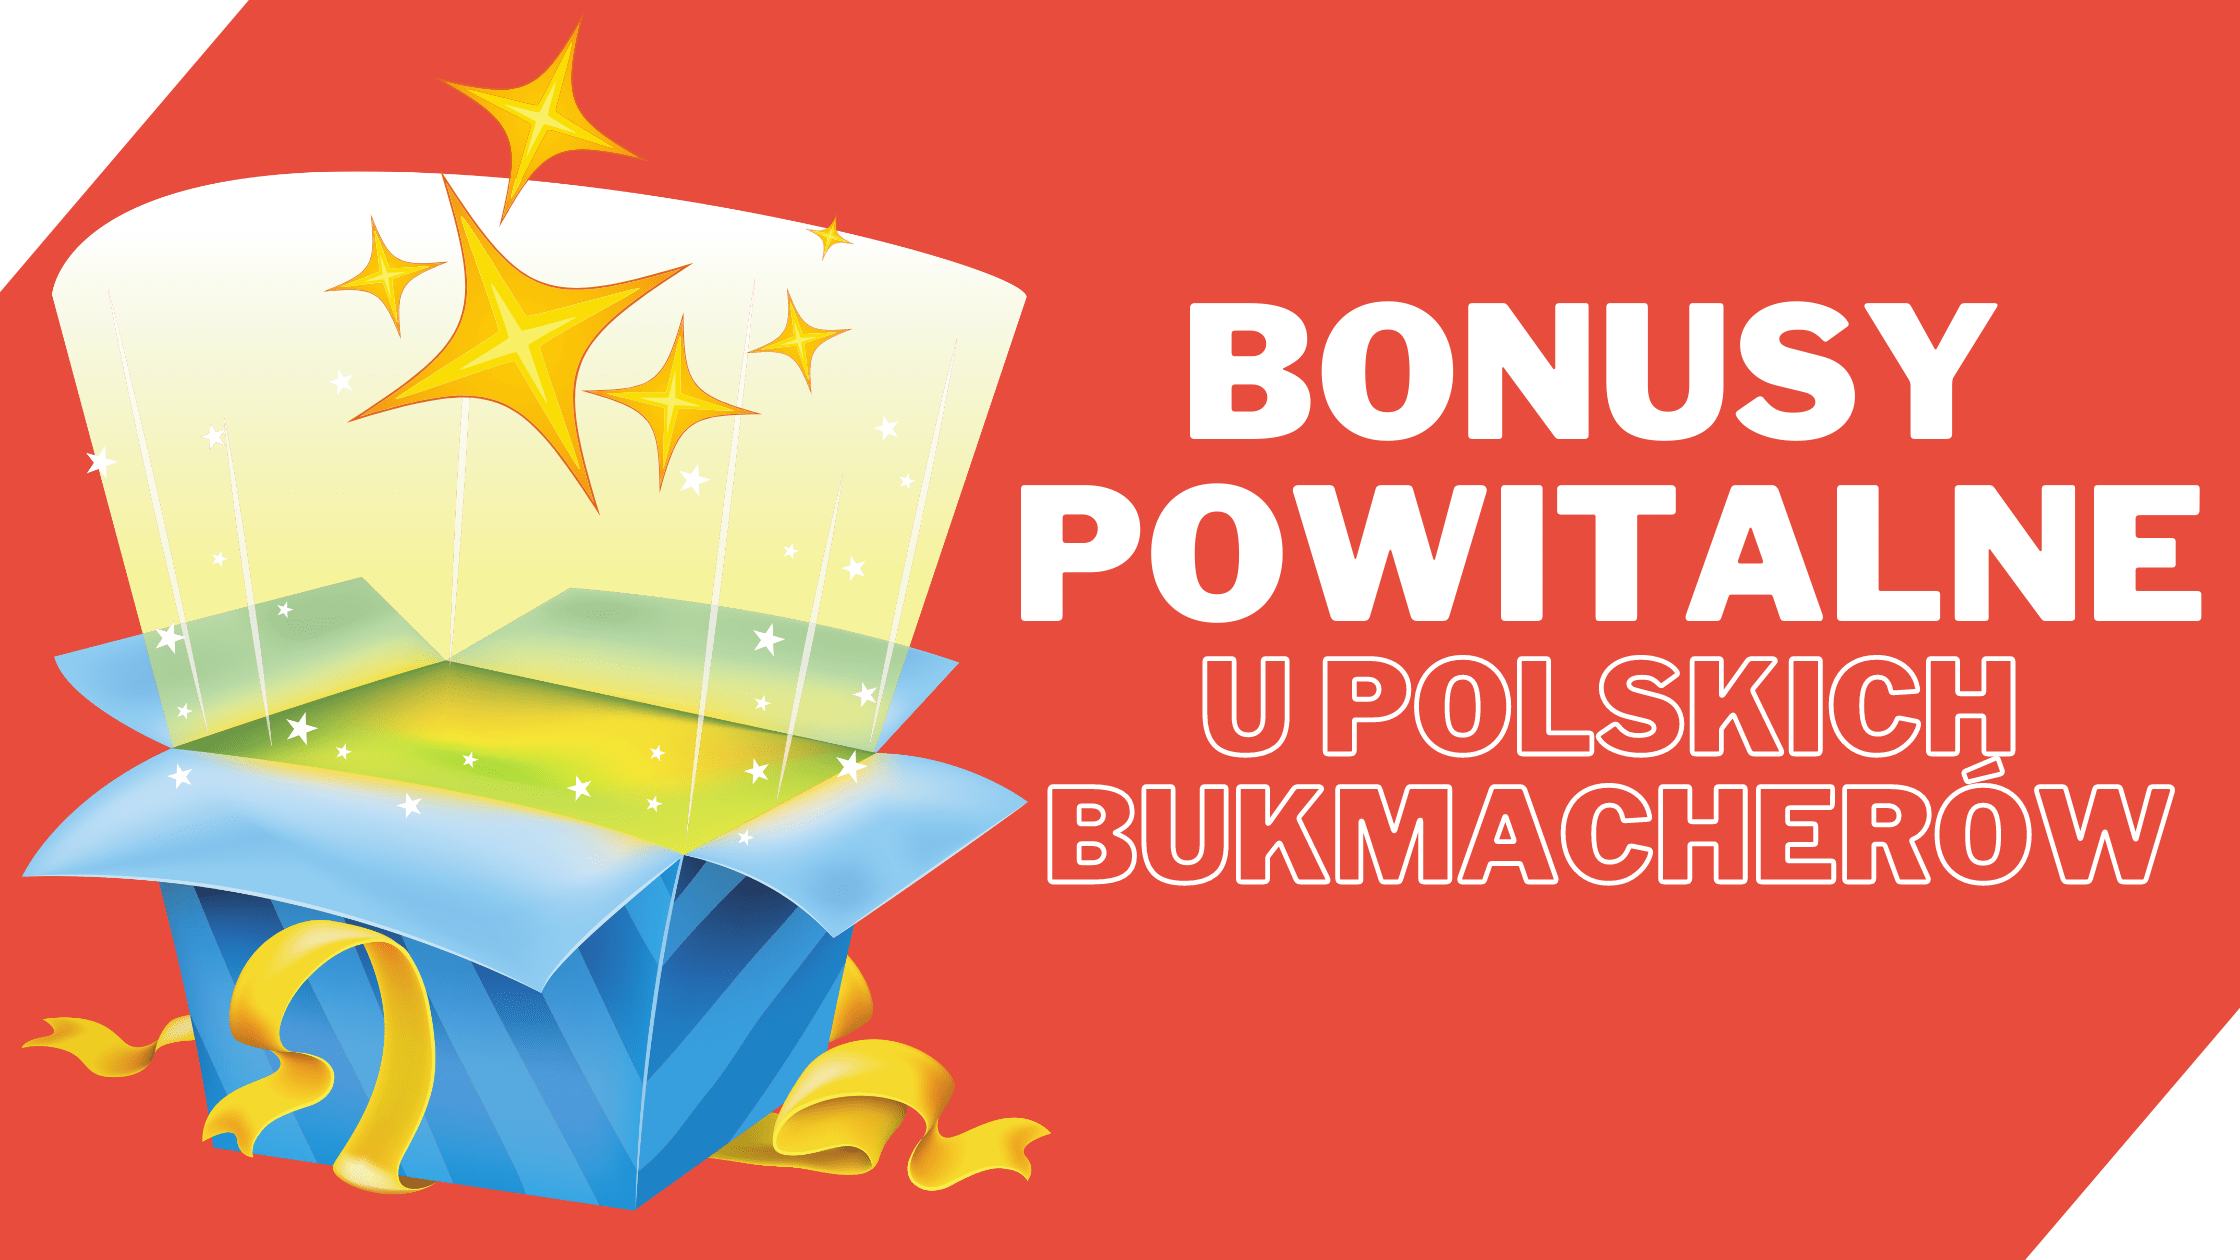 bonusy powitalne legalnych polskich bukmacherów